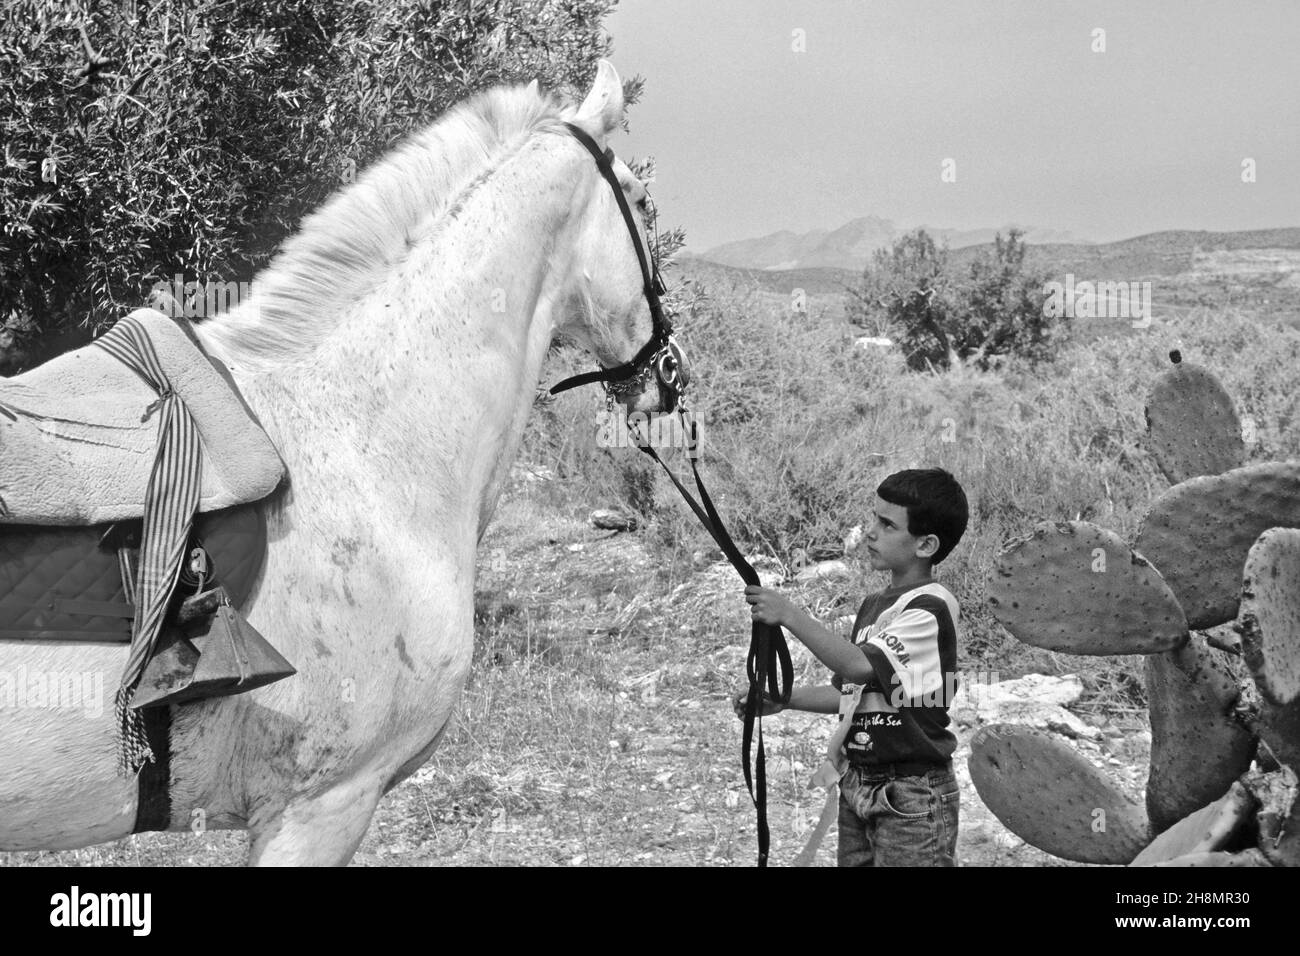 Garçon en face de chevaux blancs tirant les rênes, cheval blanc, garçon tirant le cheval par les rênes, fiesta espagnole, Andalousie, Espagne Banque D'Images